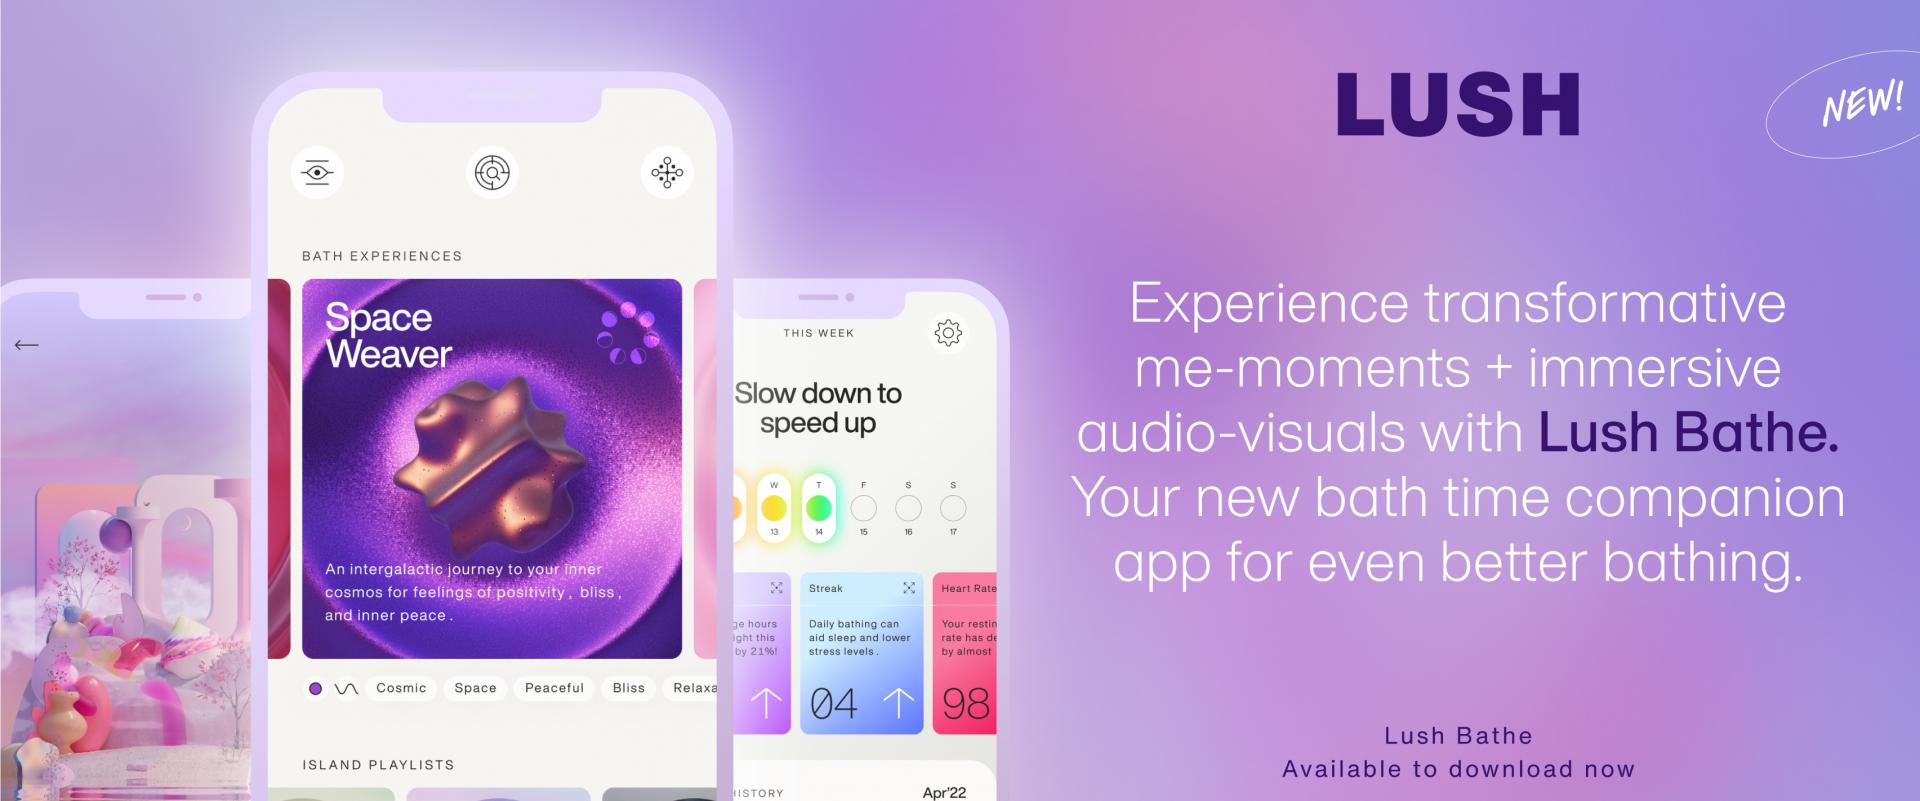 Lush wprowadził aplikację relaksacyjną - do pobrania na iOS i Androida